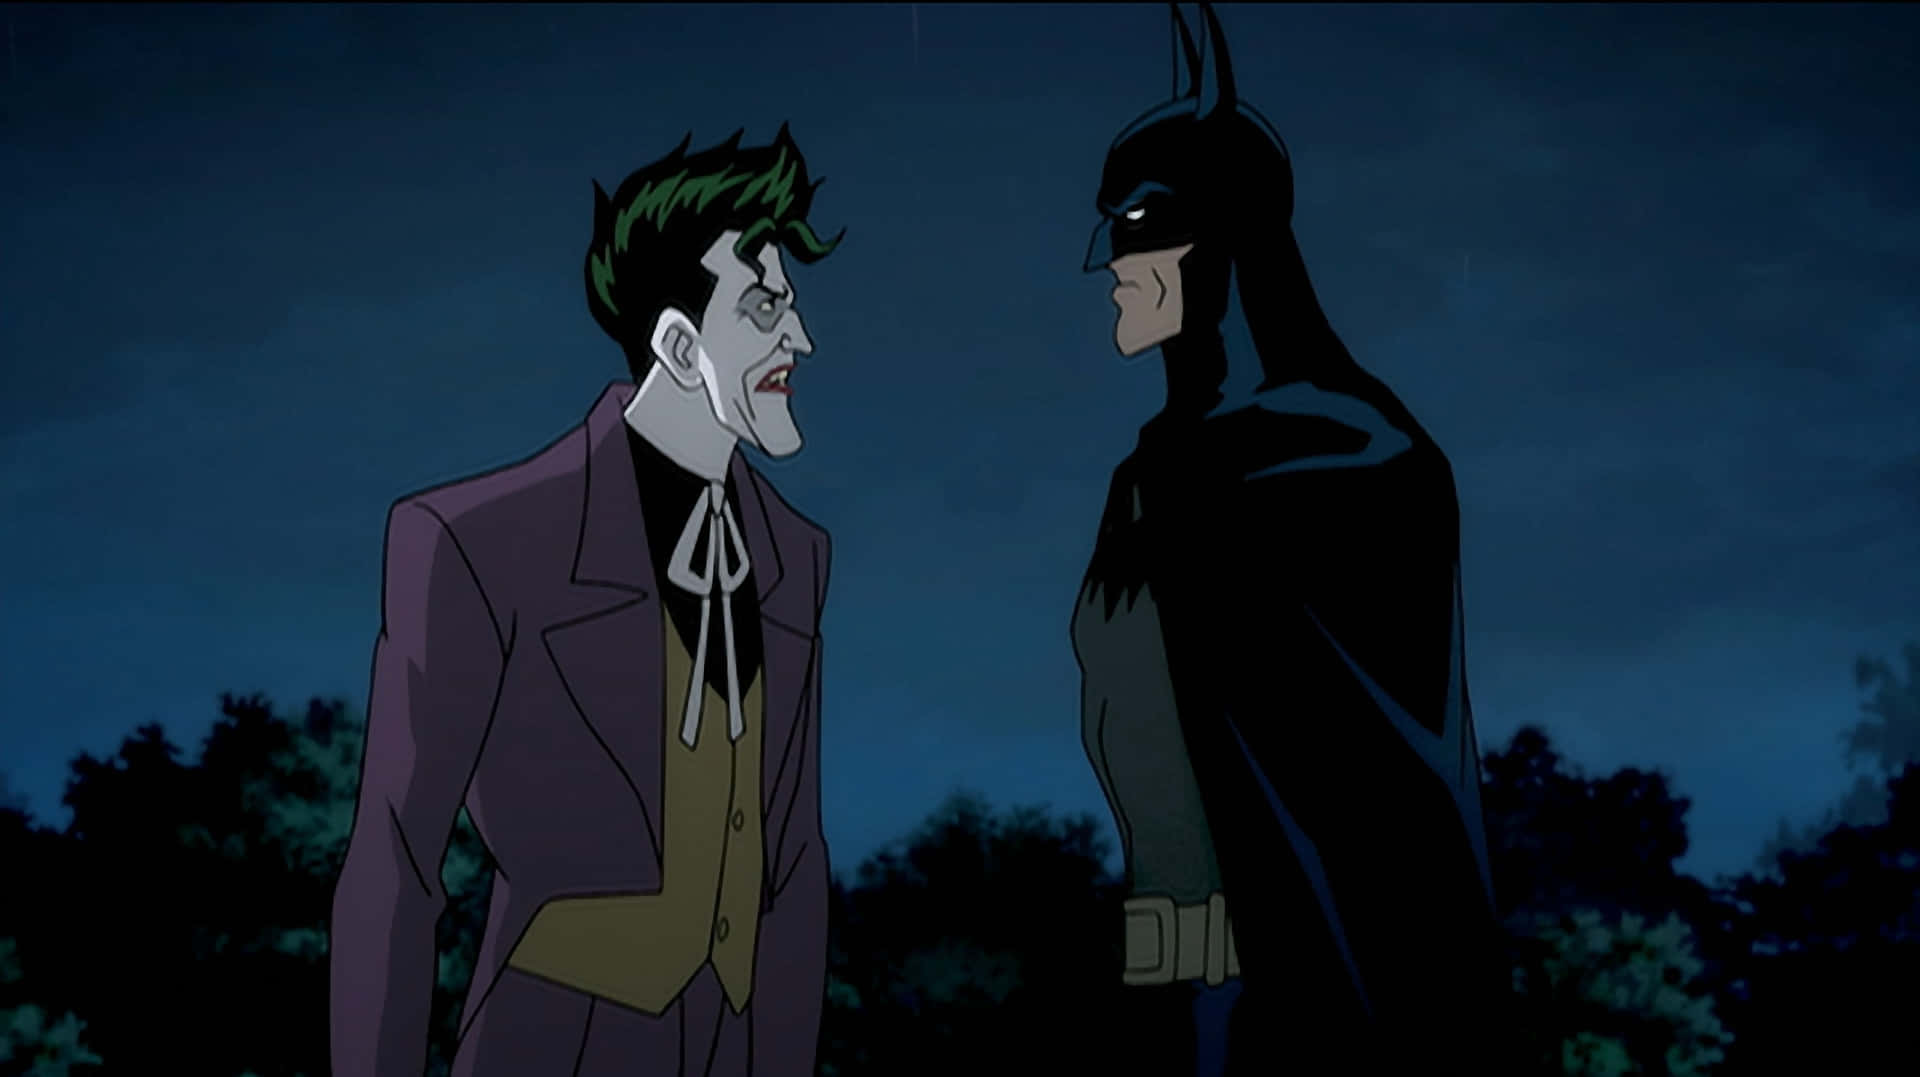 The Joker confronts Batman in an intense scene from Batman: The Killing Joke Wallpaper